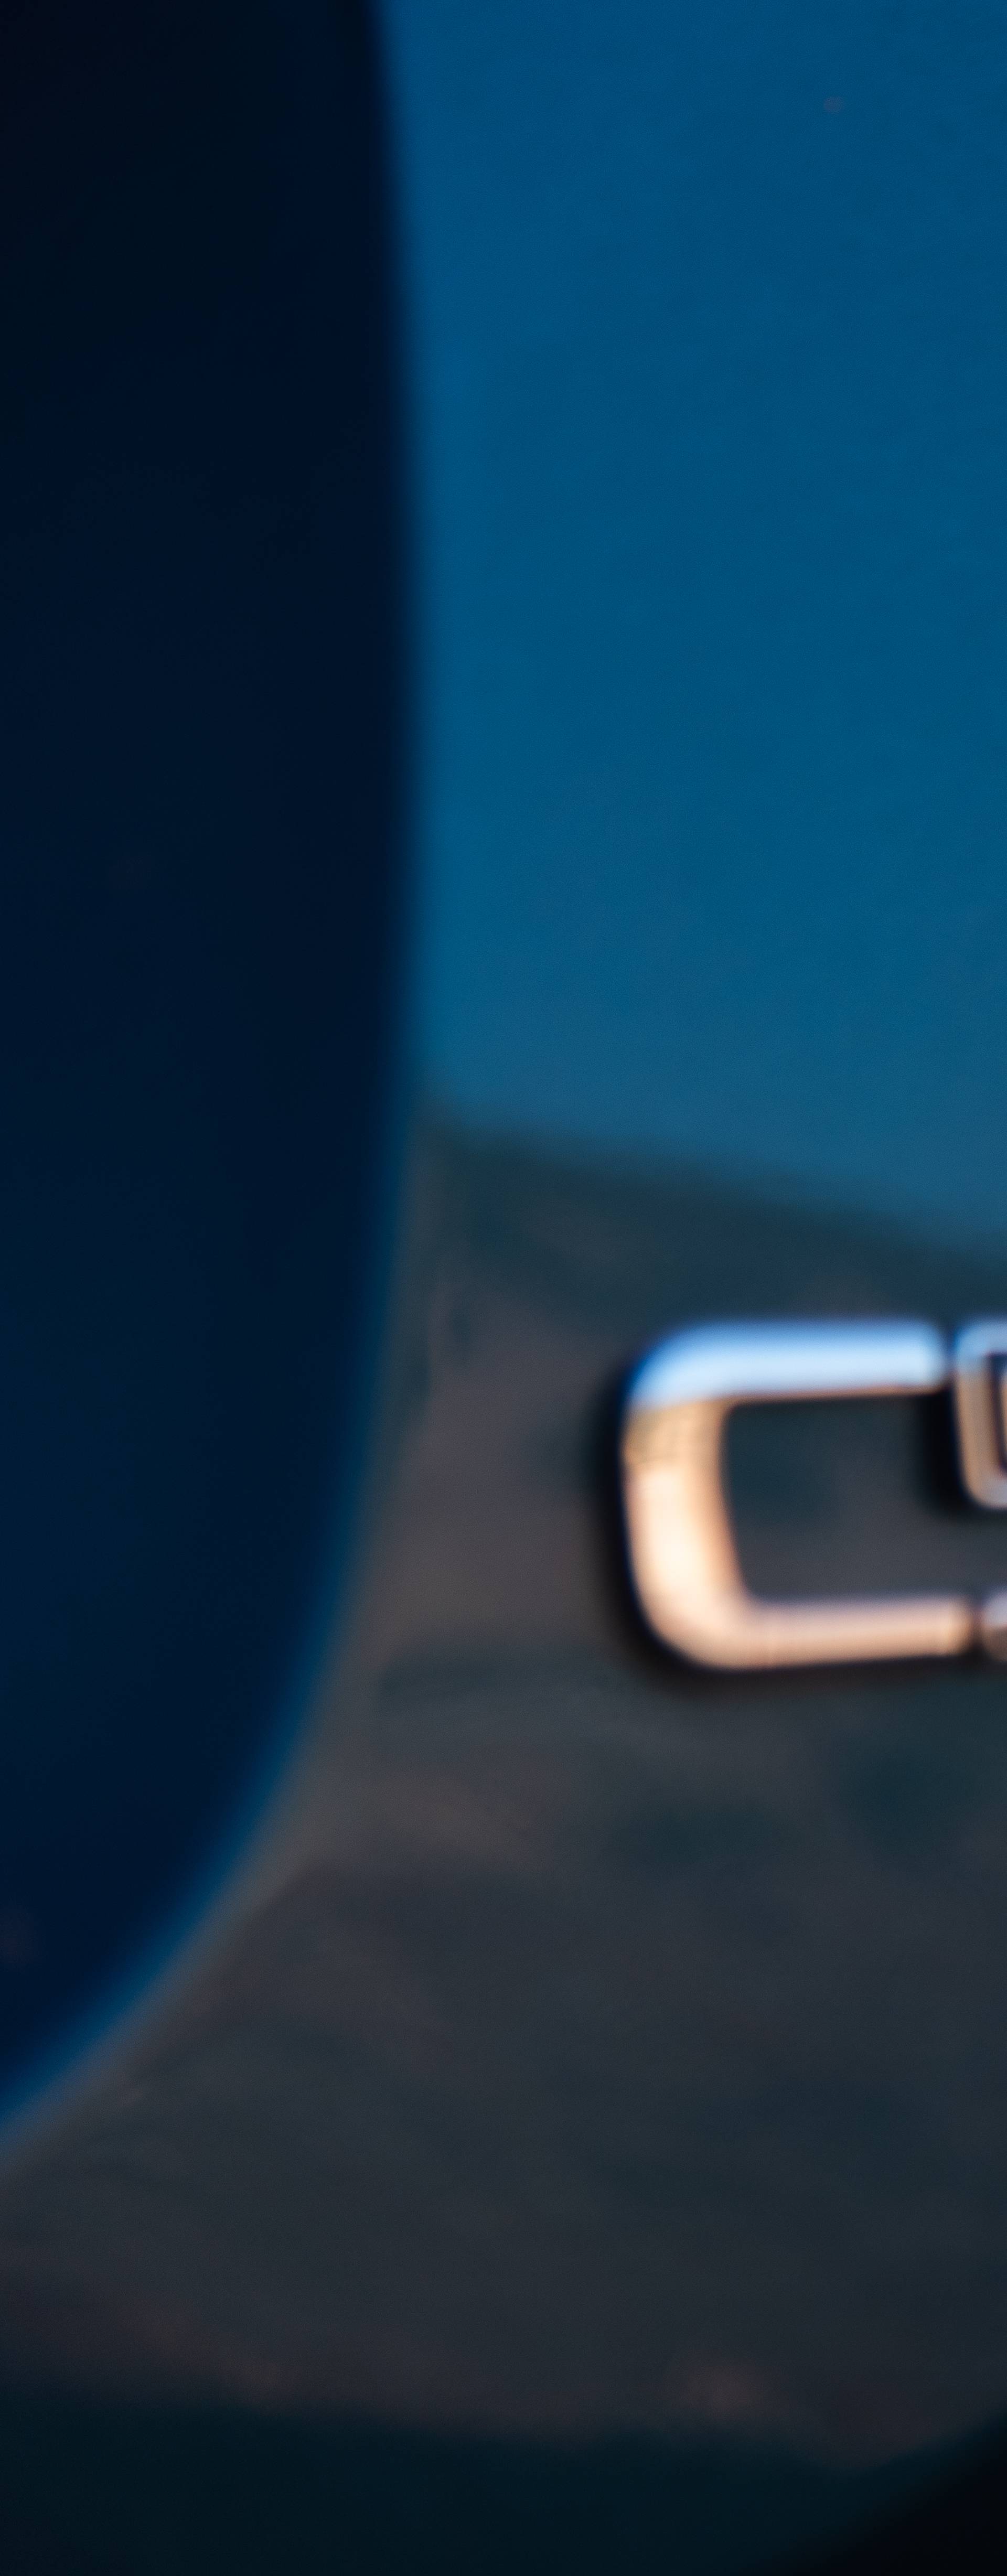 Najimpresivniji Citroën danas: C5 Aircross dolazi u ožujku